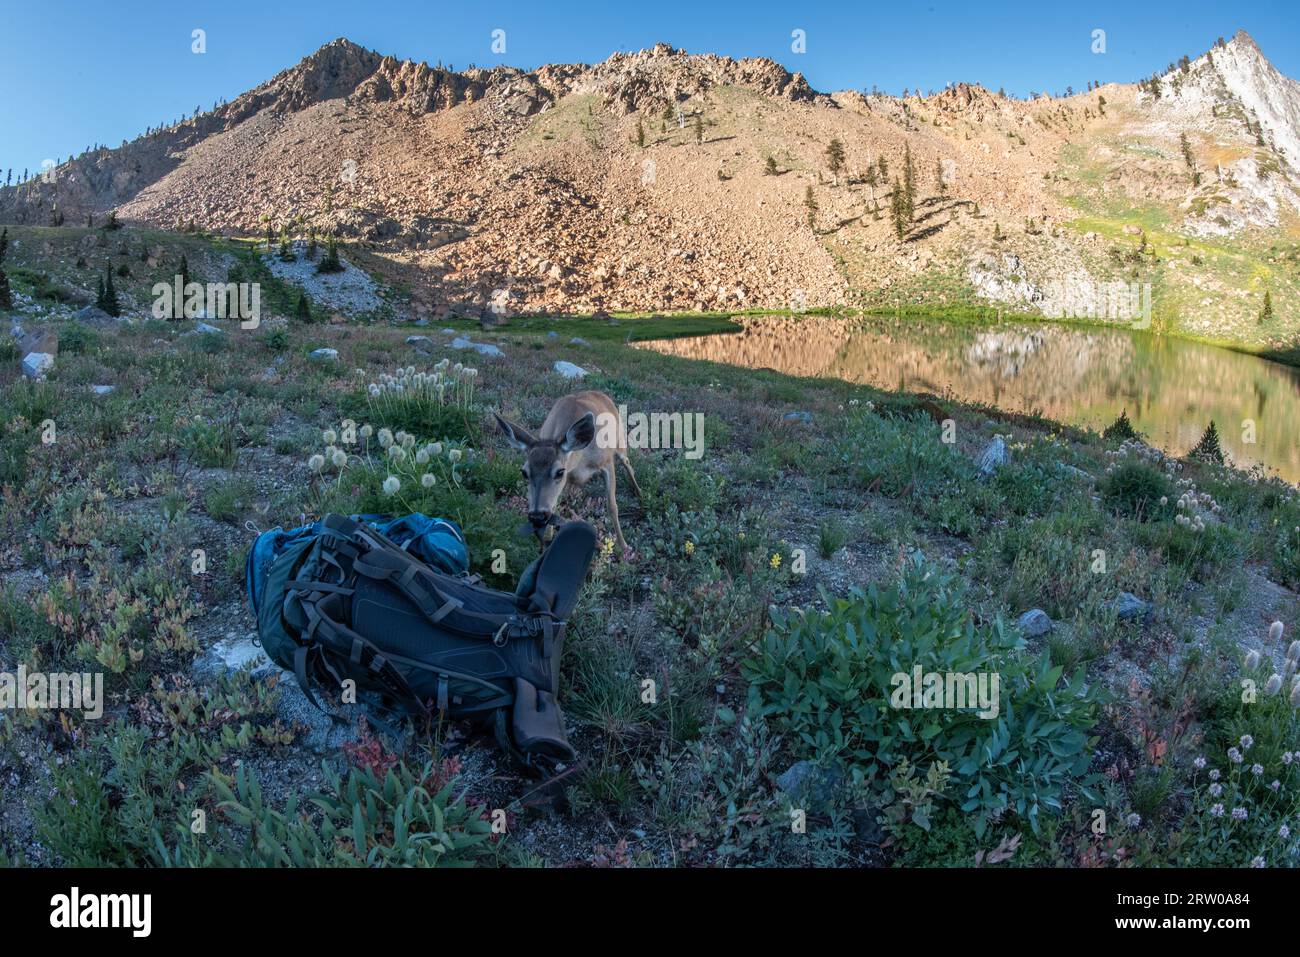 Un cerf à queue noire mâche un sac à dos dans le paysage pittoresque de la nature sauvage des Trinity alps en Californie du Nord. Banque D'Images